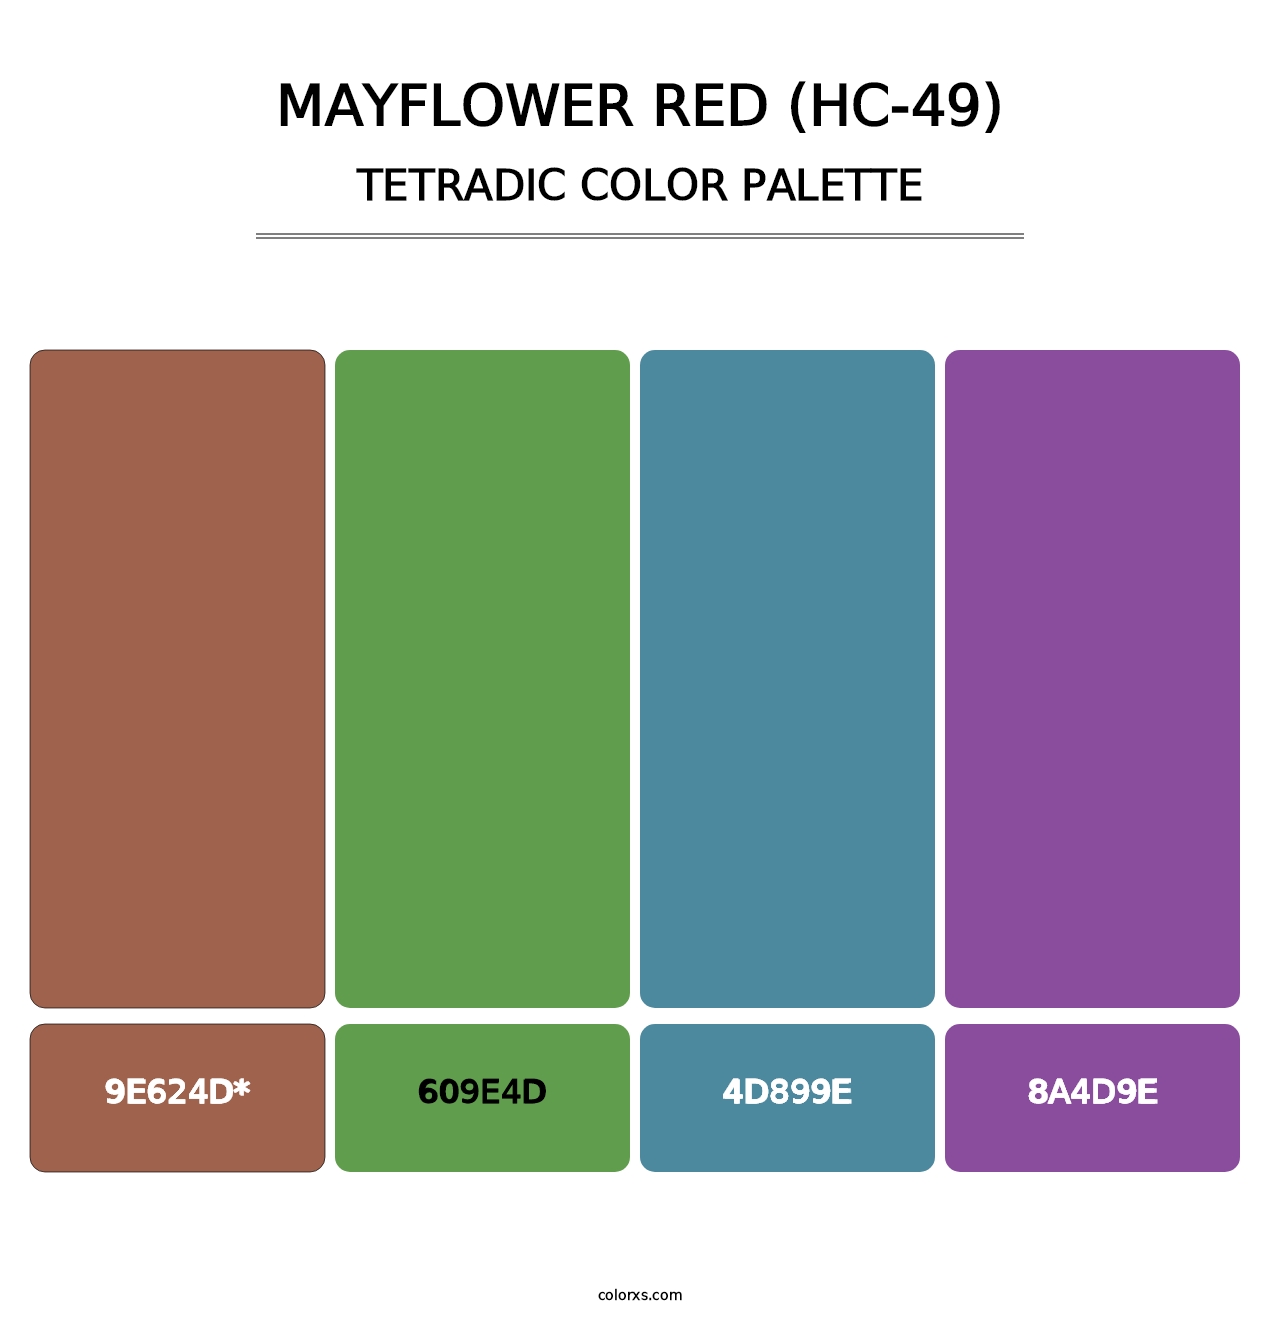 Mayflower Red (HC-49) - Tetradic Color Palette